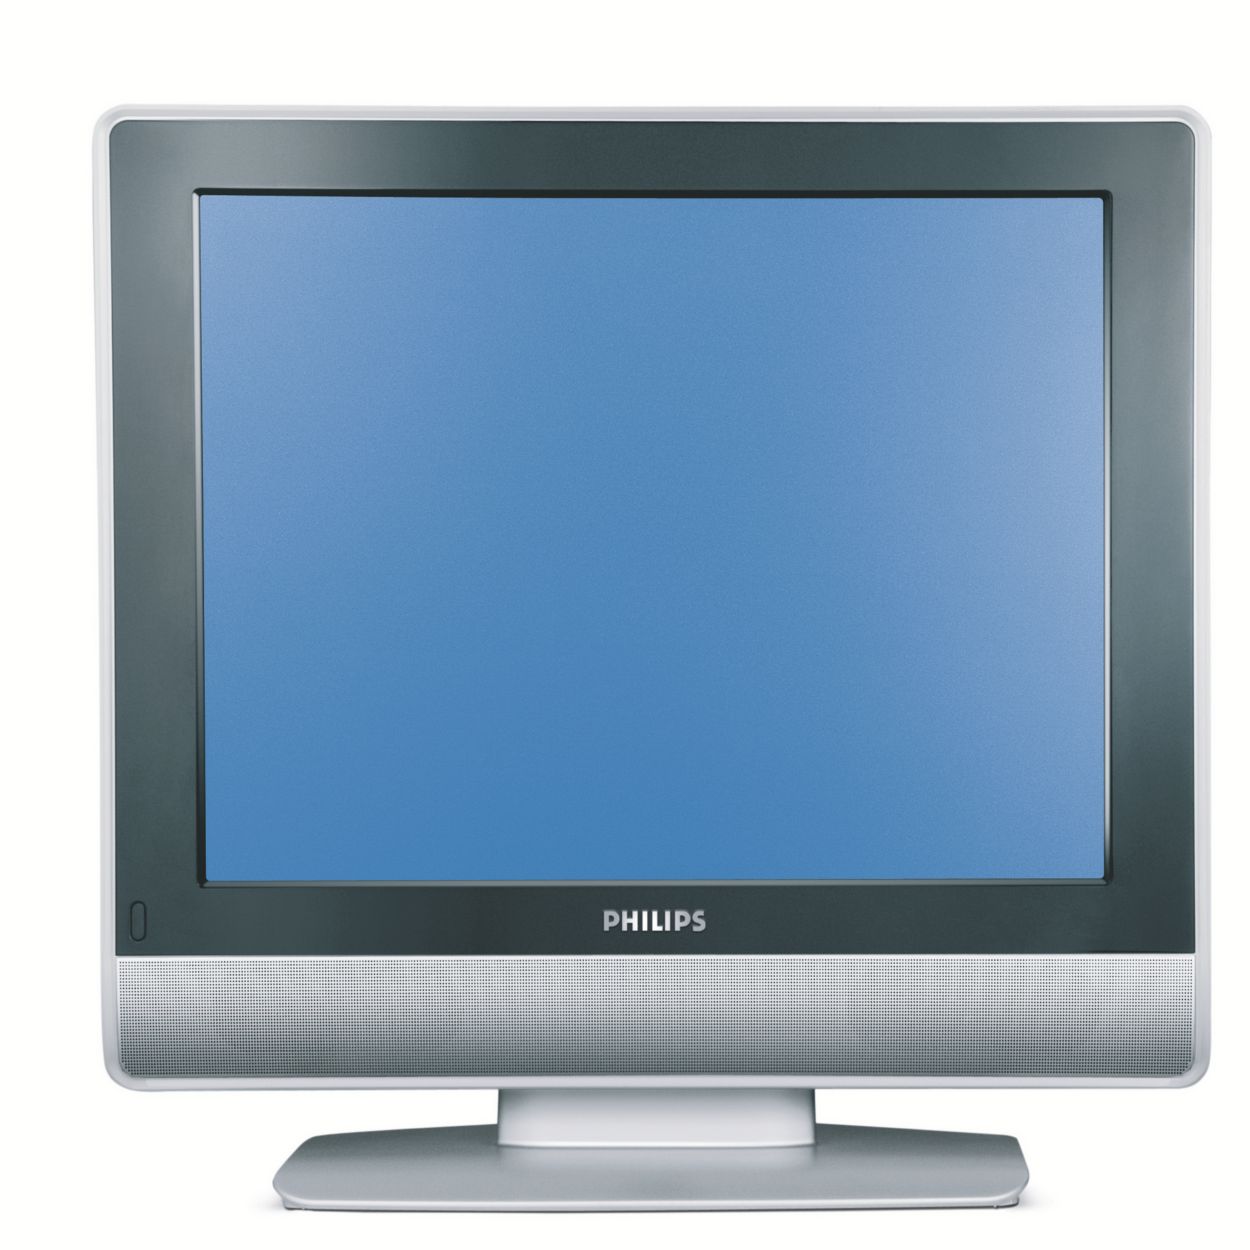 Старые жк телевизоры. Philips 20pfl4112s/60. Телевизор Philips 20hf5234 20". Телевизор Philips 15hf5234 15". Телевизор Philips 20hf5474/10.